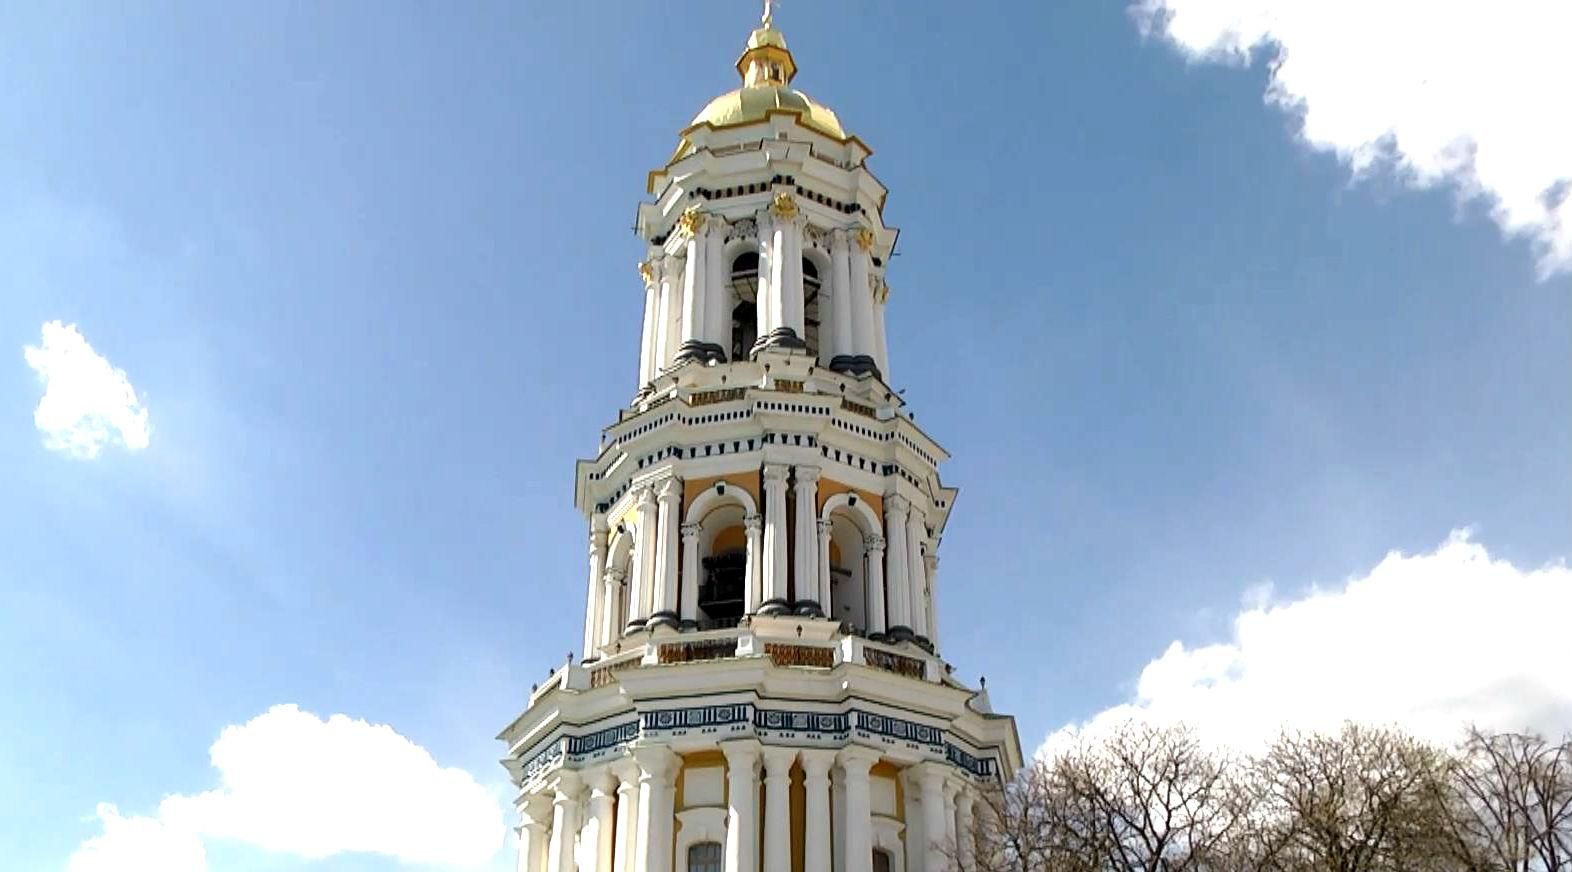 Лаврская колокольня вновь открыта для посетителей